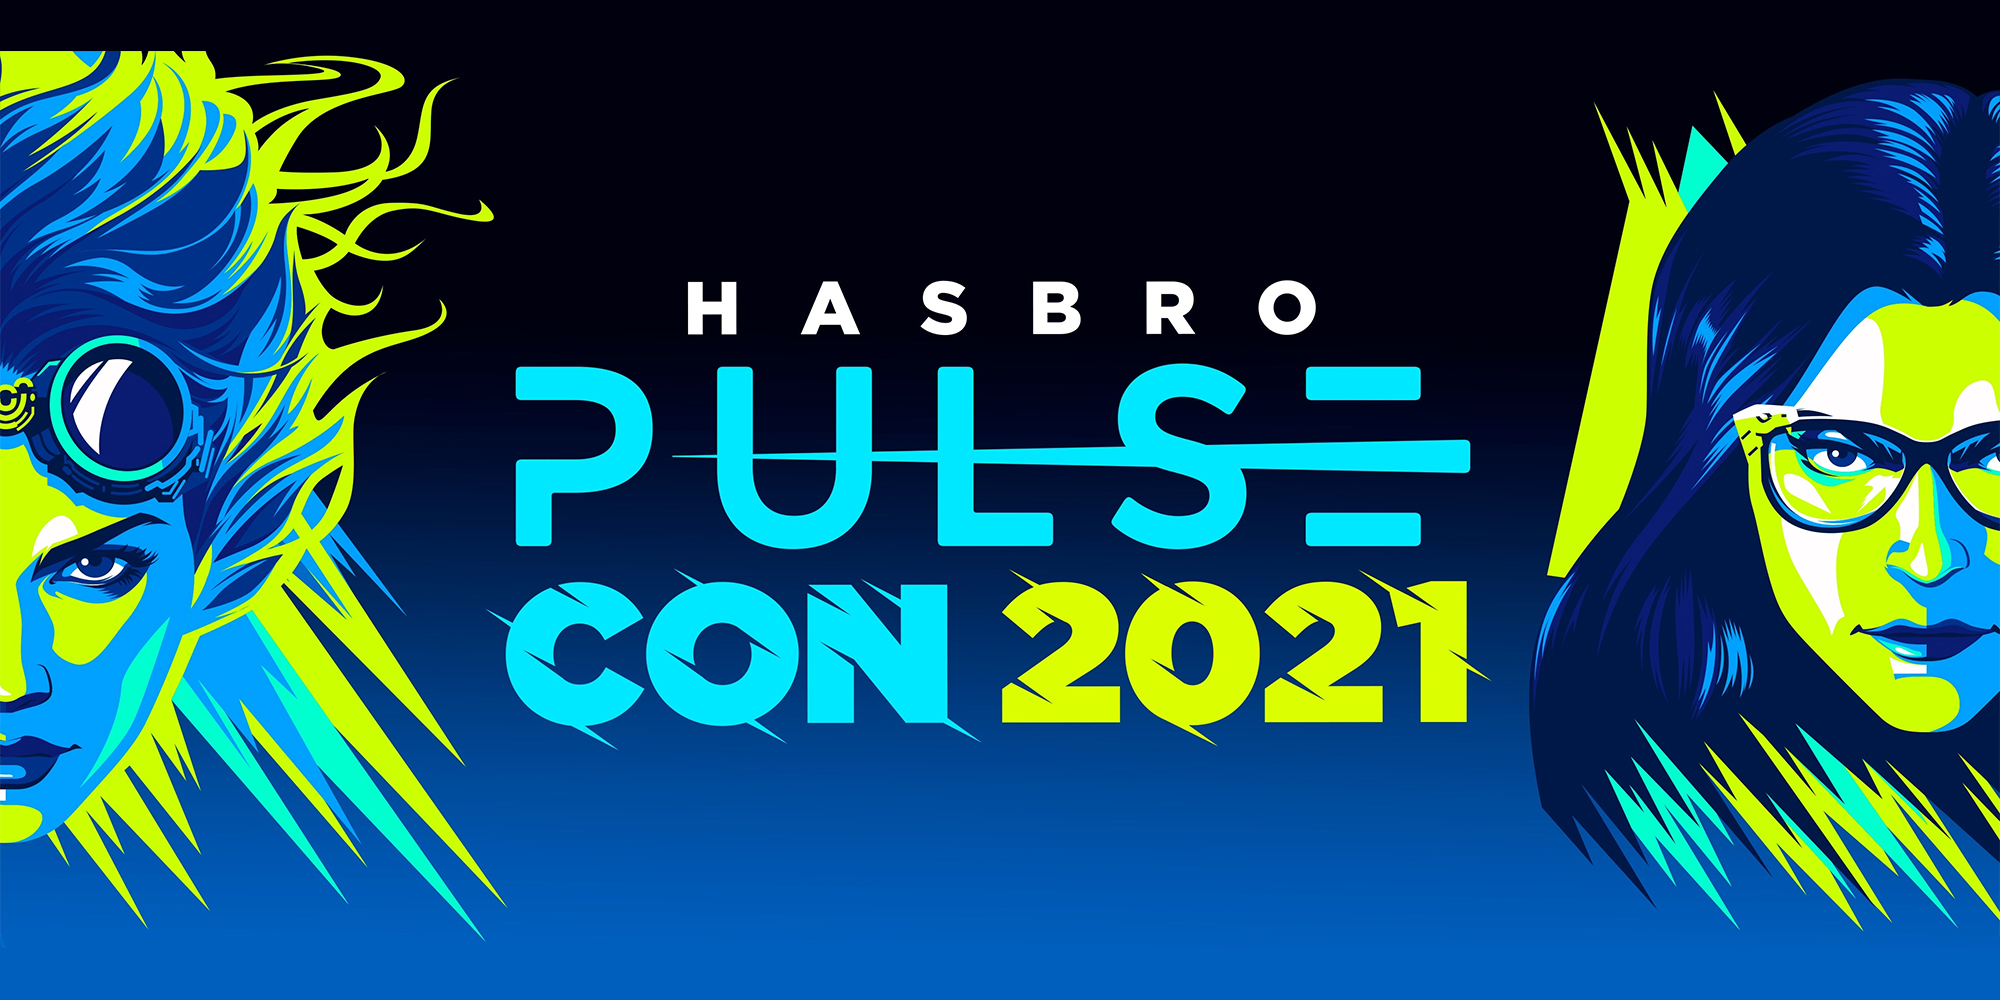 Hasbro Pulse Con 2021 Date Announced